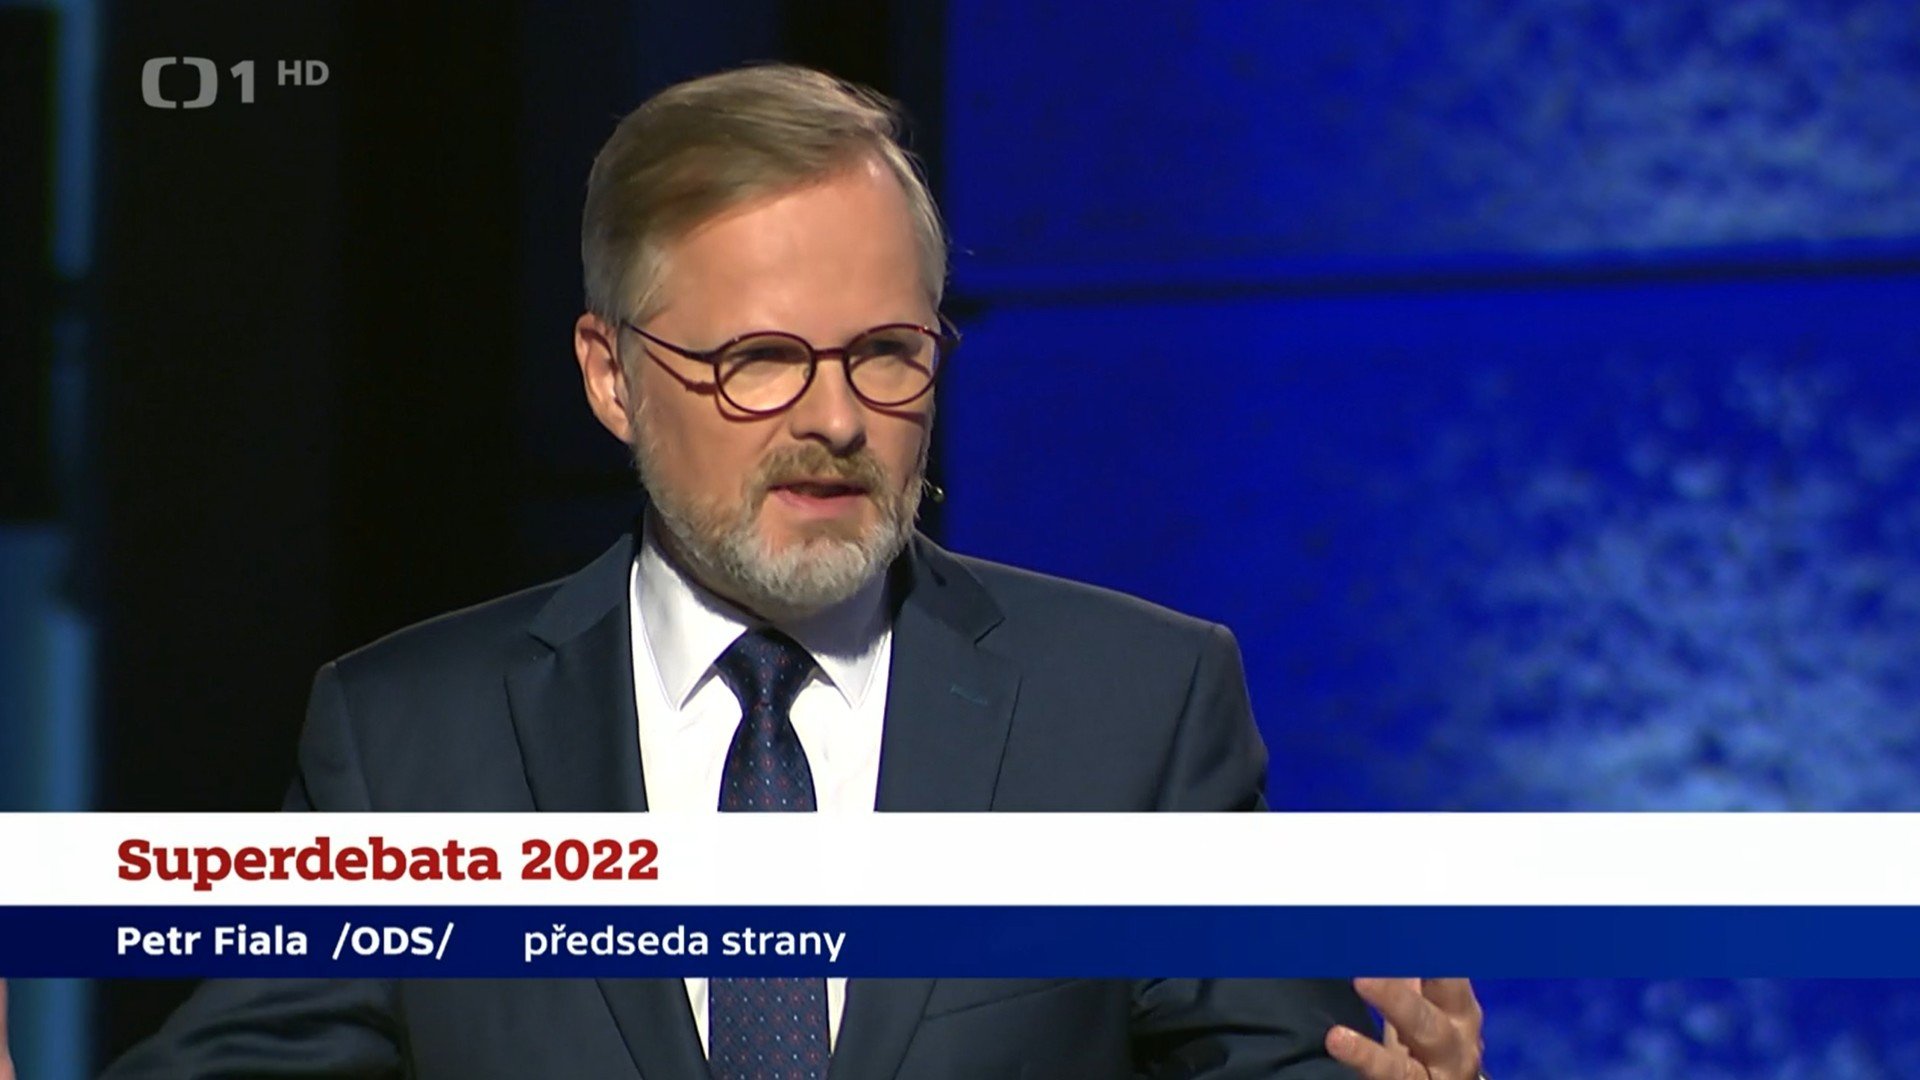 Superdebata České televize 2022: Závěrečná výzva voličům před komunálními a senátními volbami